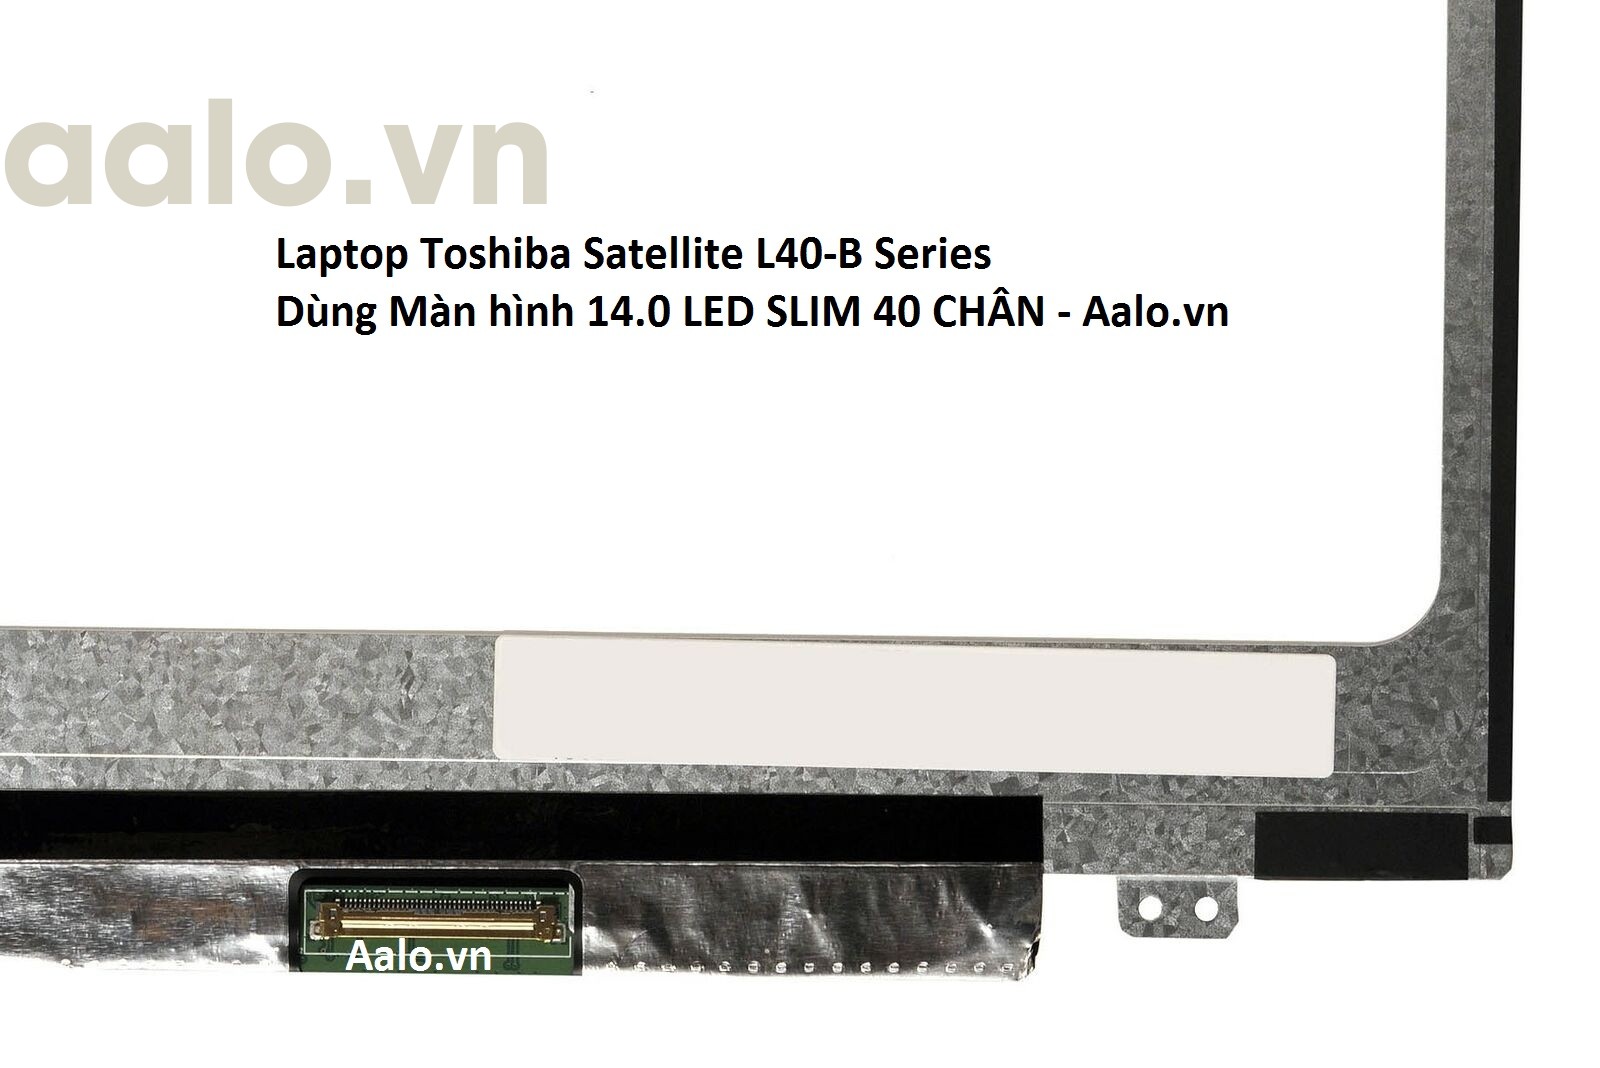 Màn hình Laptop Toshiba Satellite L40-B Series